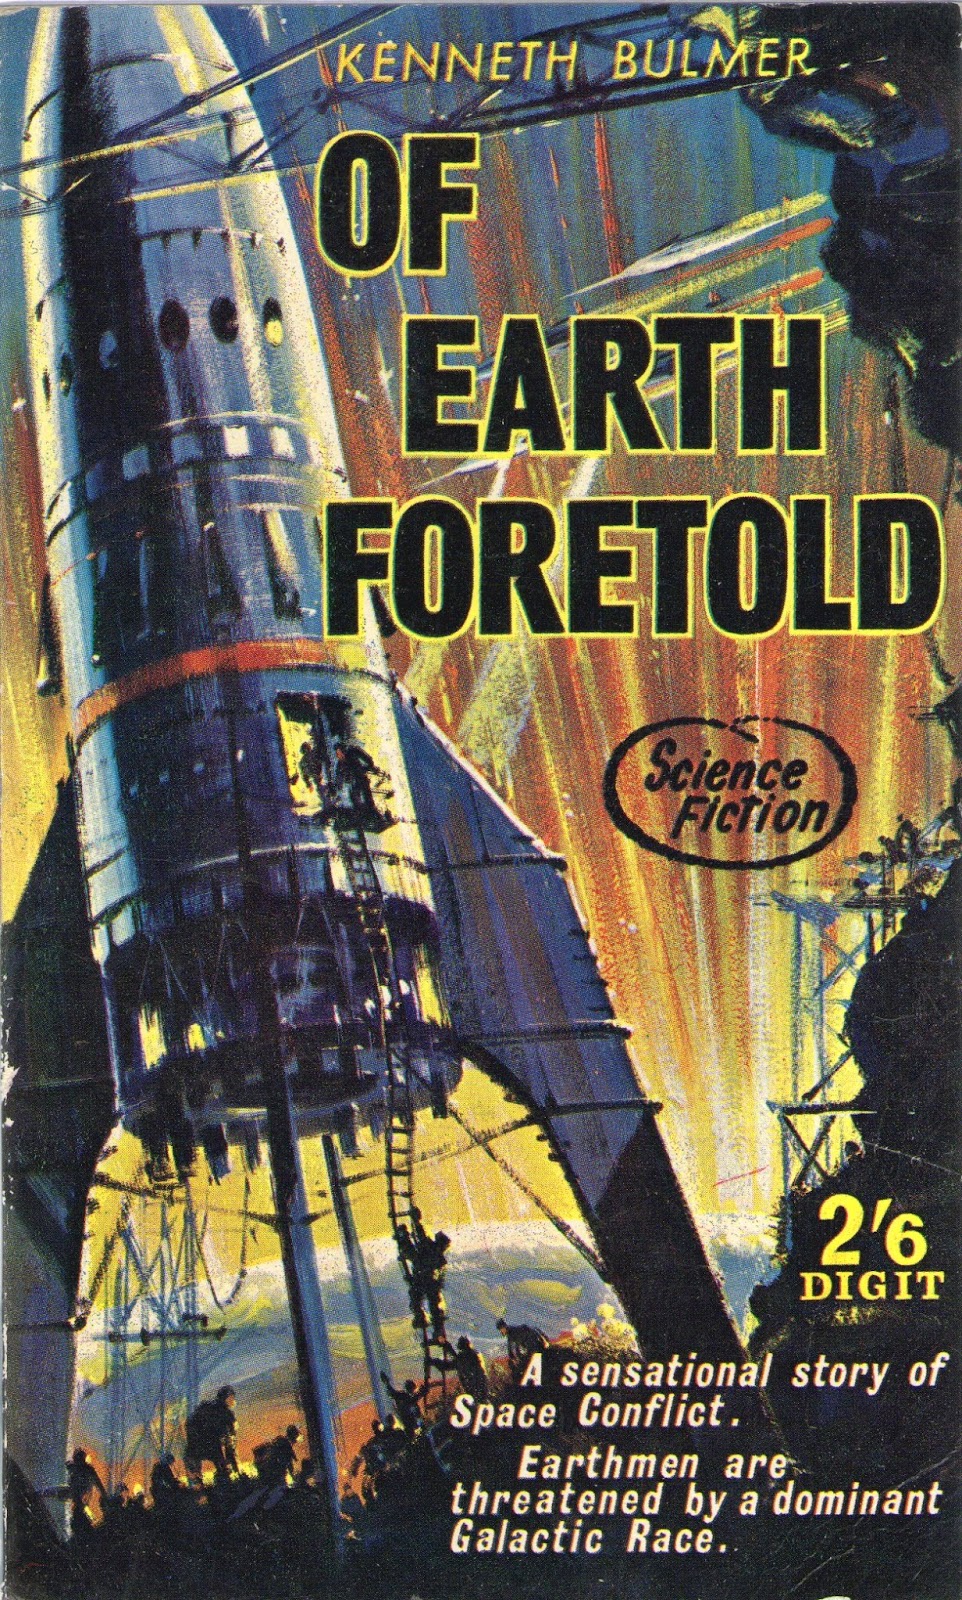 Of Earth Foretold  Kenneth Bulmer 1963 Digit Books R681